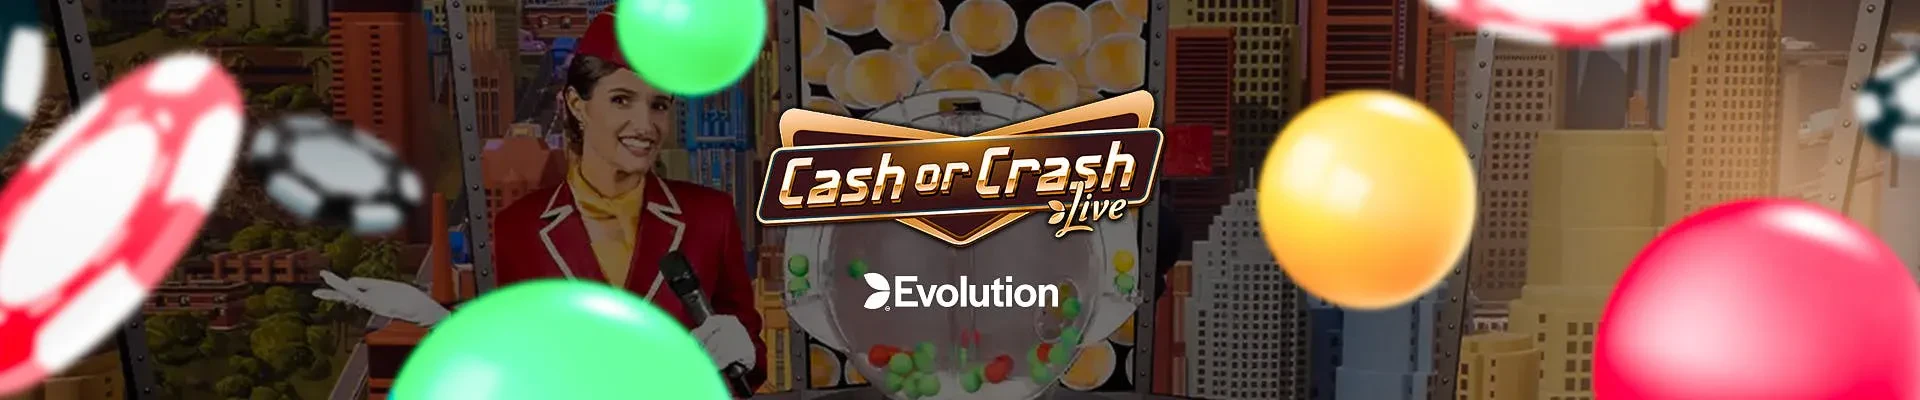 cash or crash banner